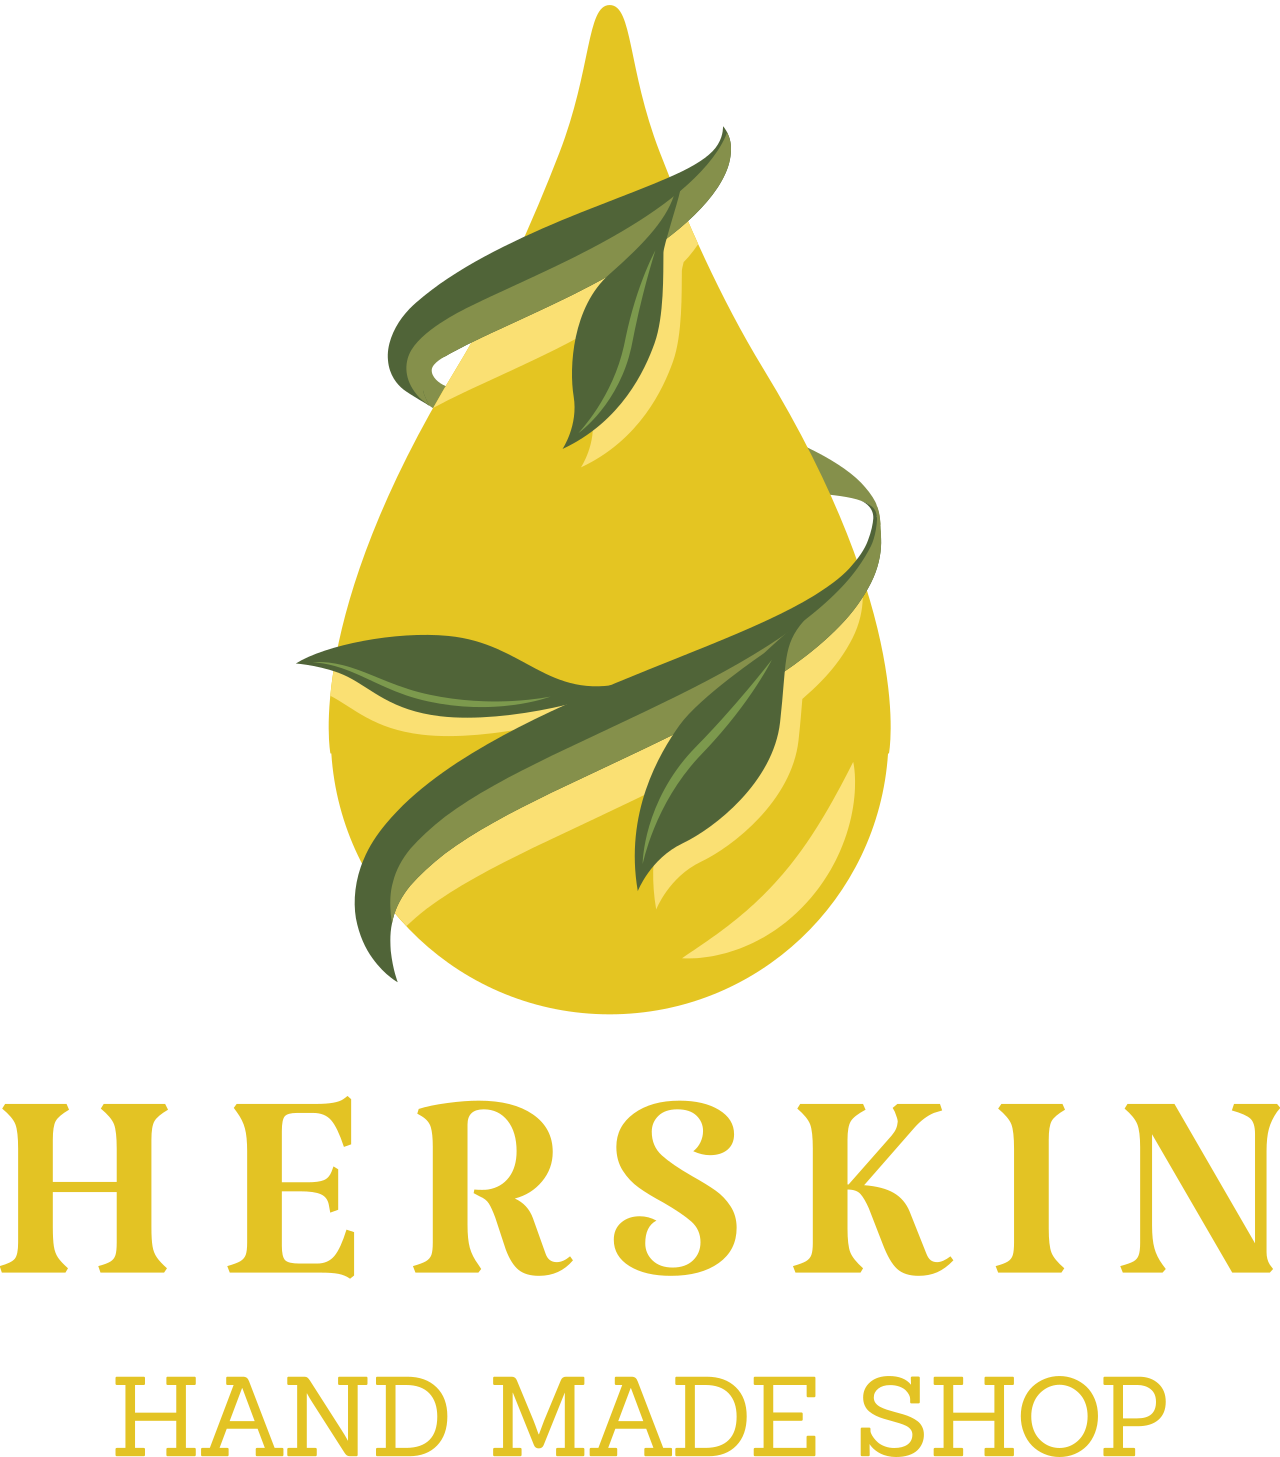 HerSkin's web page